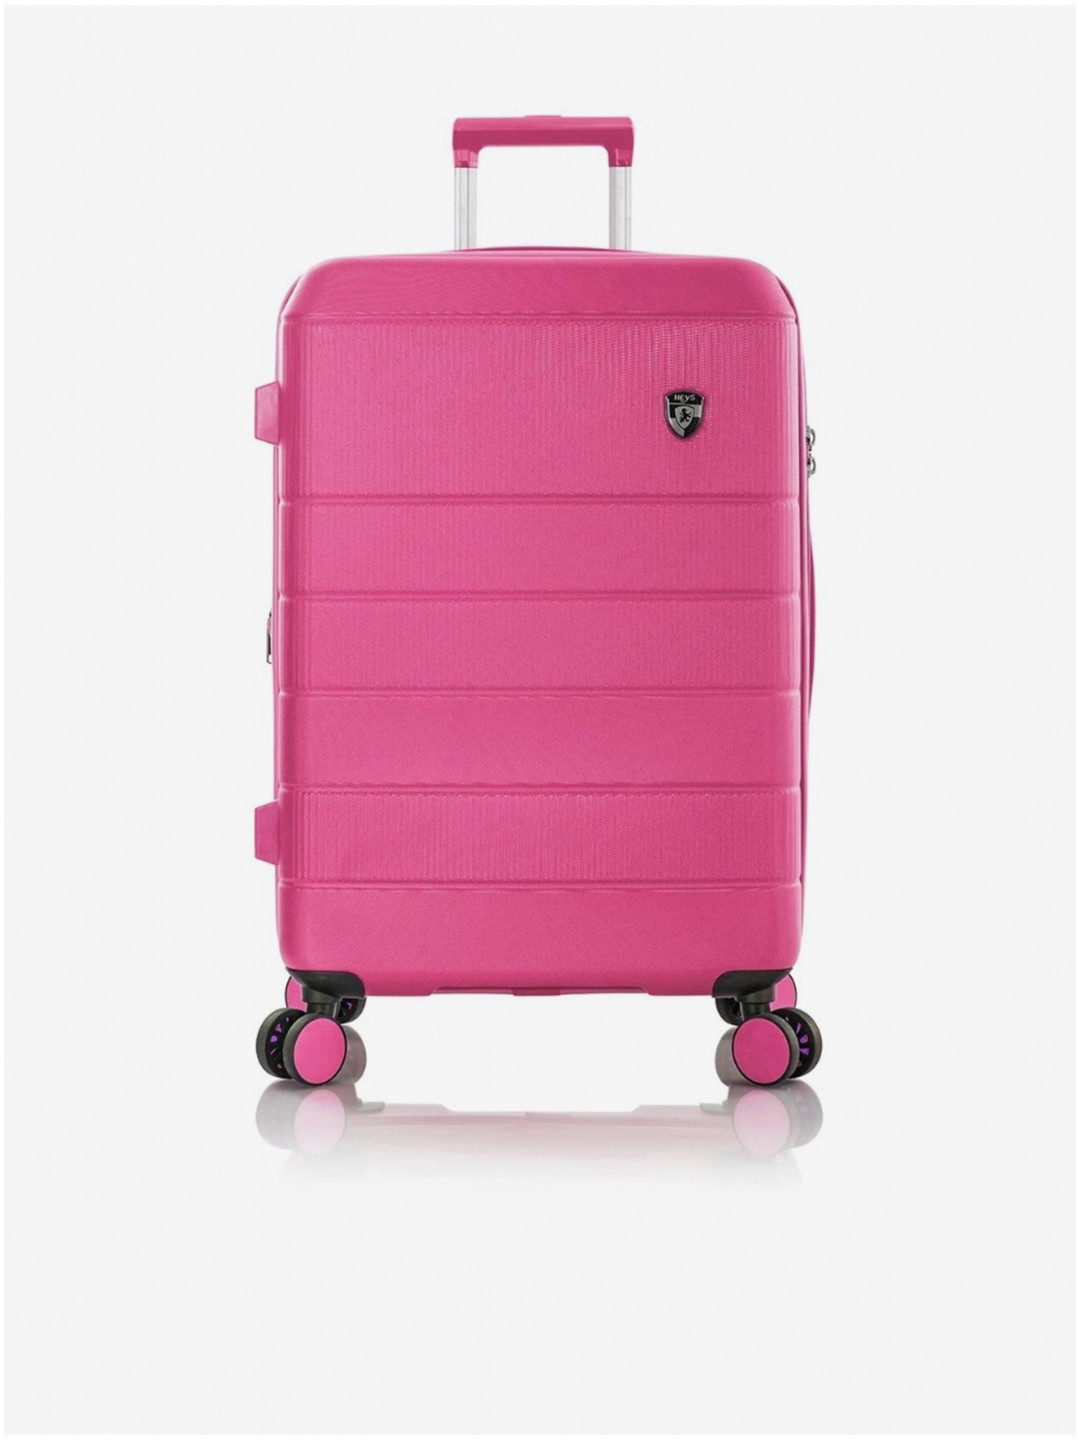 Růžový cestovní kufr Heys Neo M